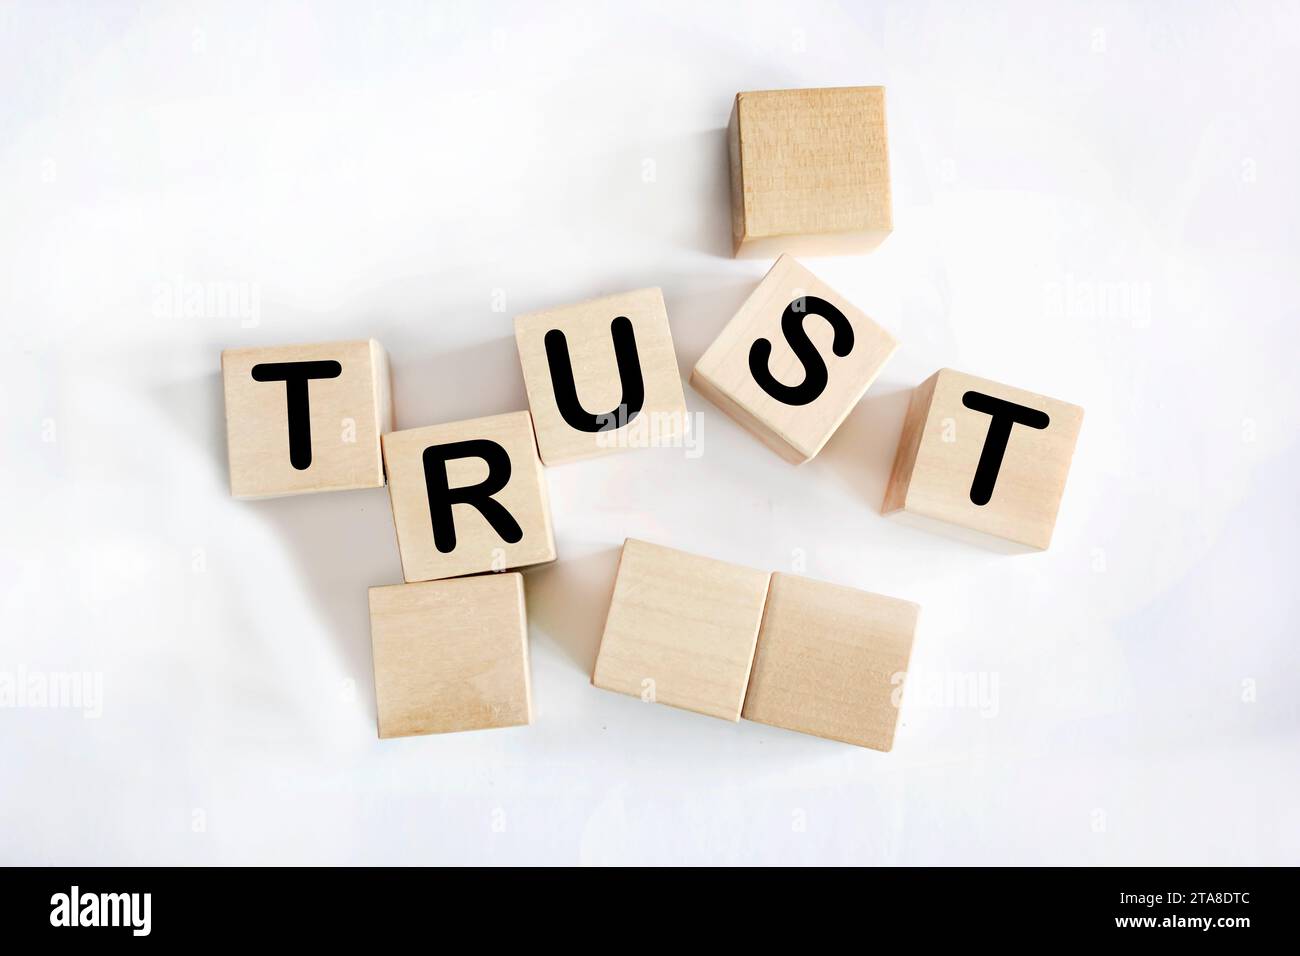 Confiance est le mot écrit sur des blocs de bois. Fond blanc. Concept d'entreprise pour votre conception Banque D'Images